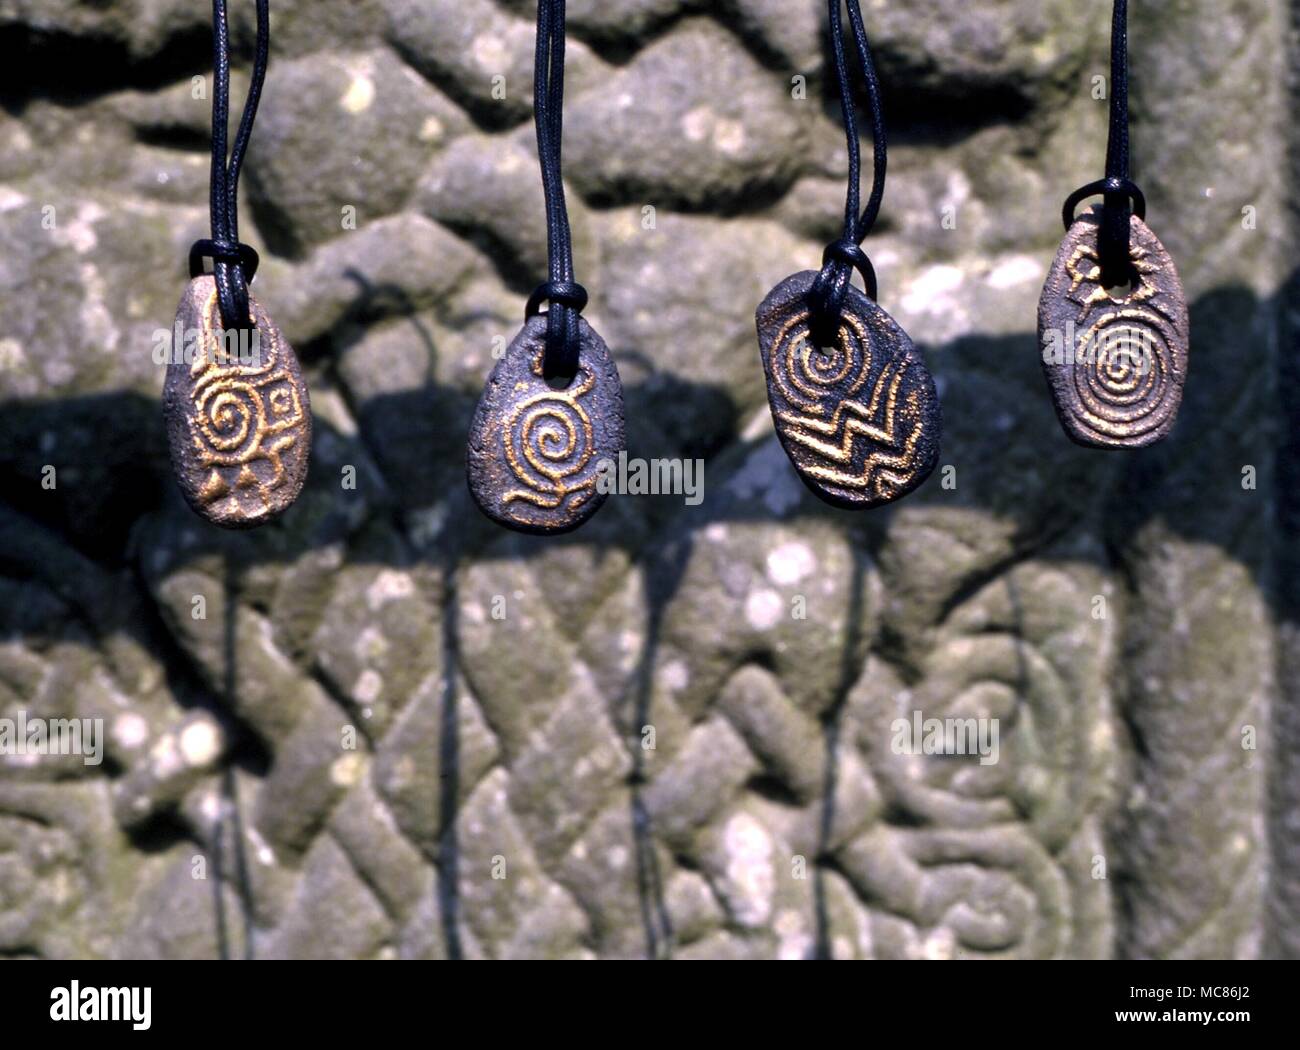 CELTIC Celtic pietre a spirale: amuletic disegni basati su Newgrange, Knowth e Dowth pietra preistorici incisioni (glifi) da luoghi sacri. Appeso sopra lo zoccolo del Celtic Cross a Monasterboice, Irlanda Foto Stock